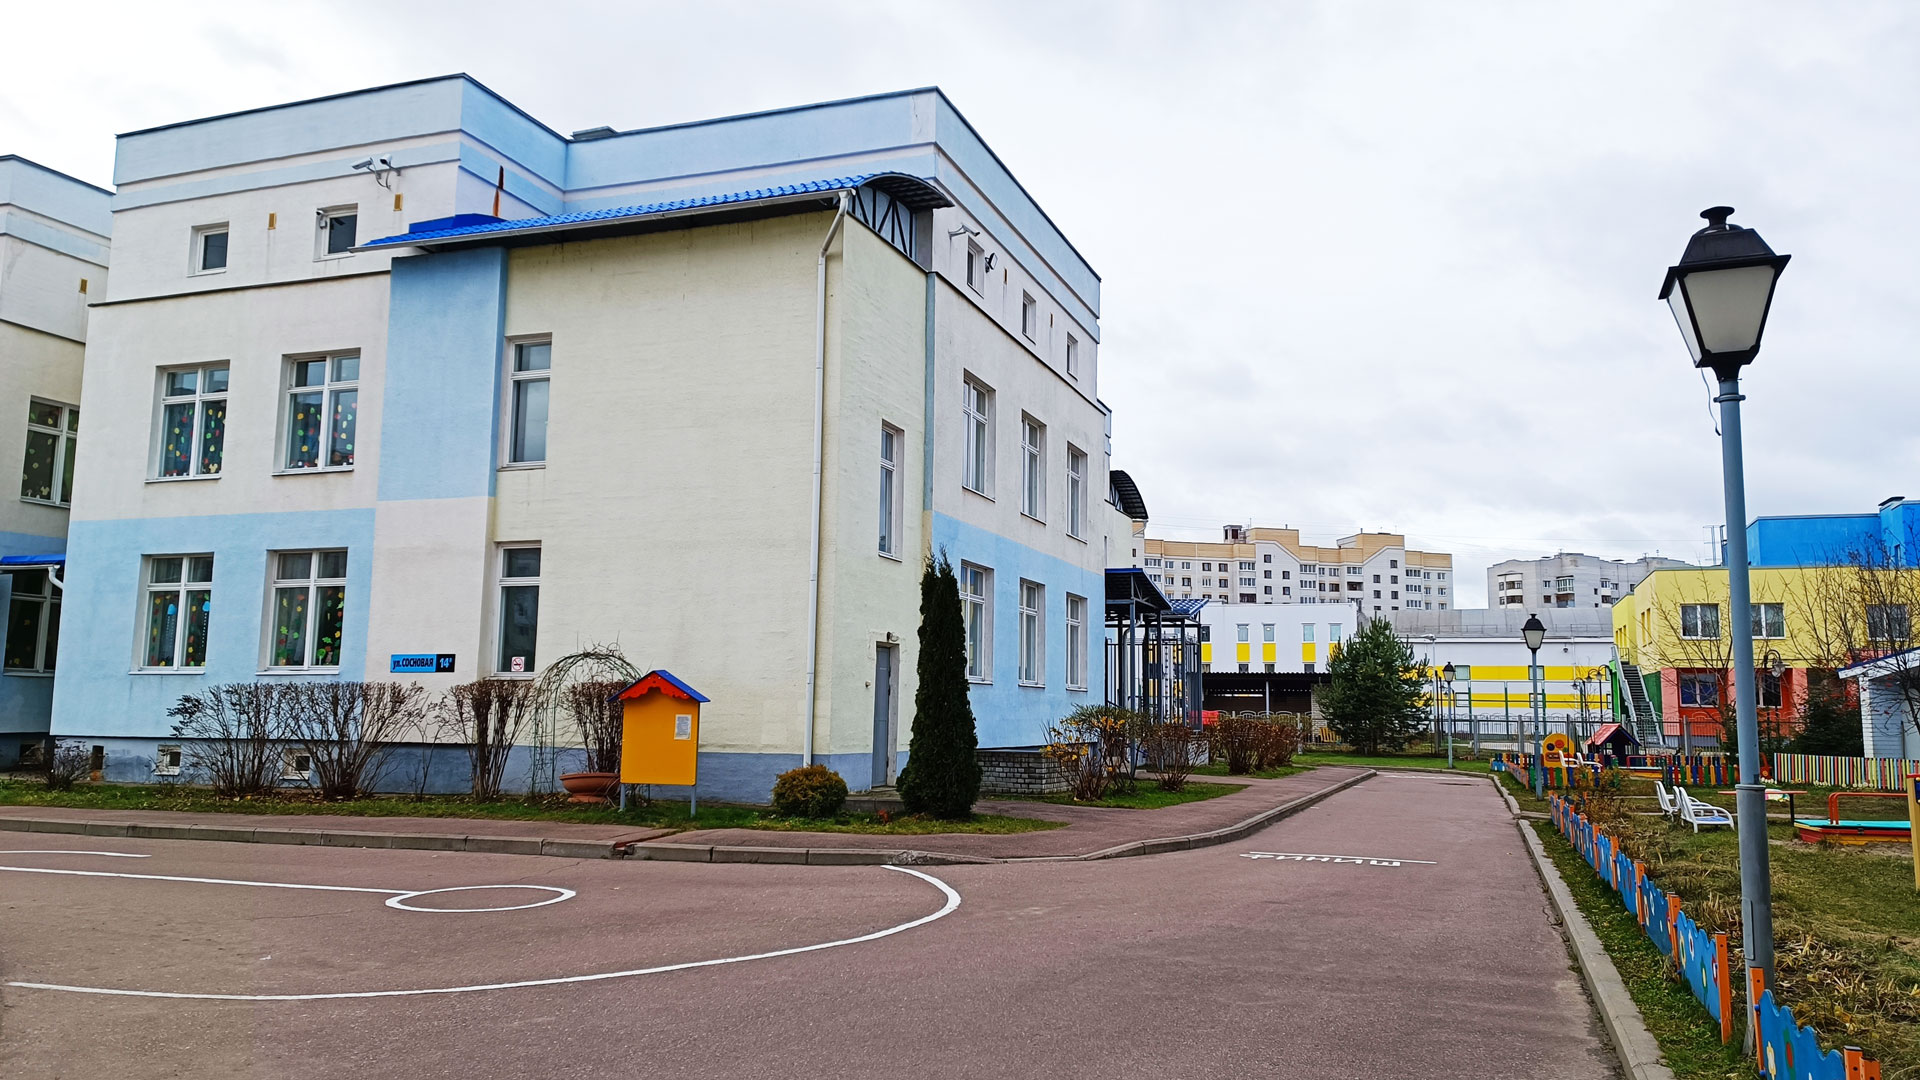 Детский сад 100 Ярославль: панорамный вид здания. 